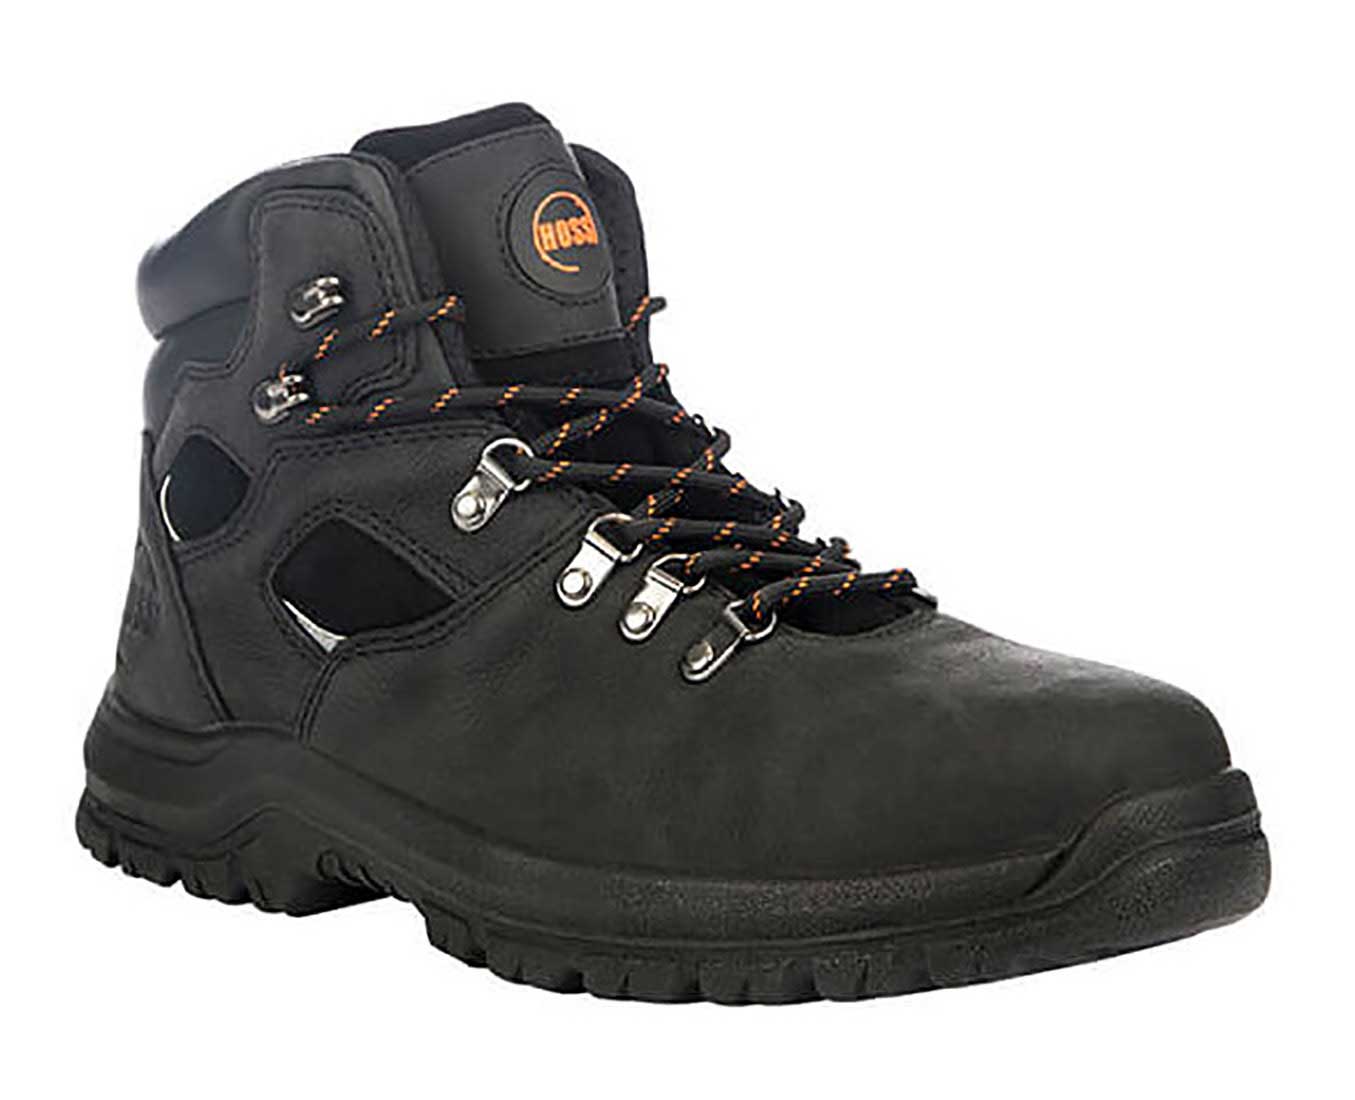 Hoss Boots Adam Black - 60122 - Men's 6 Steel Toe Waterproof Work Hiker Boot